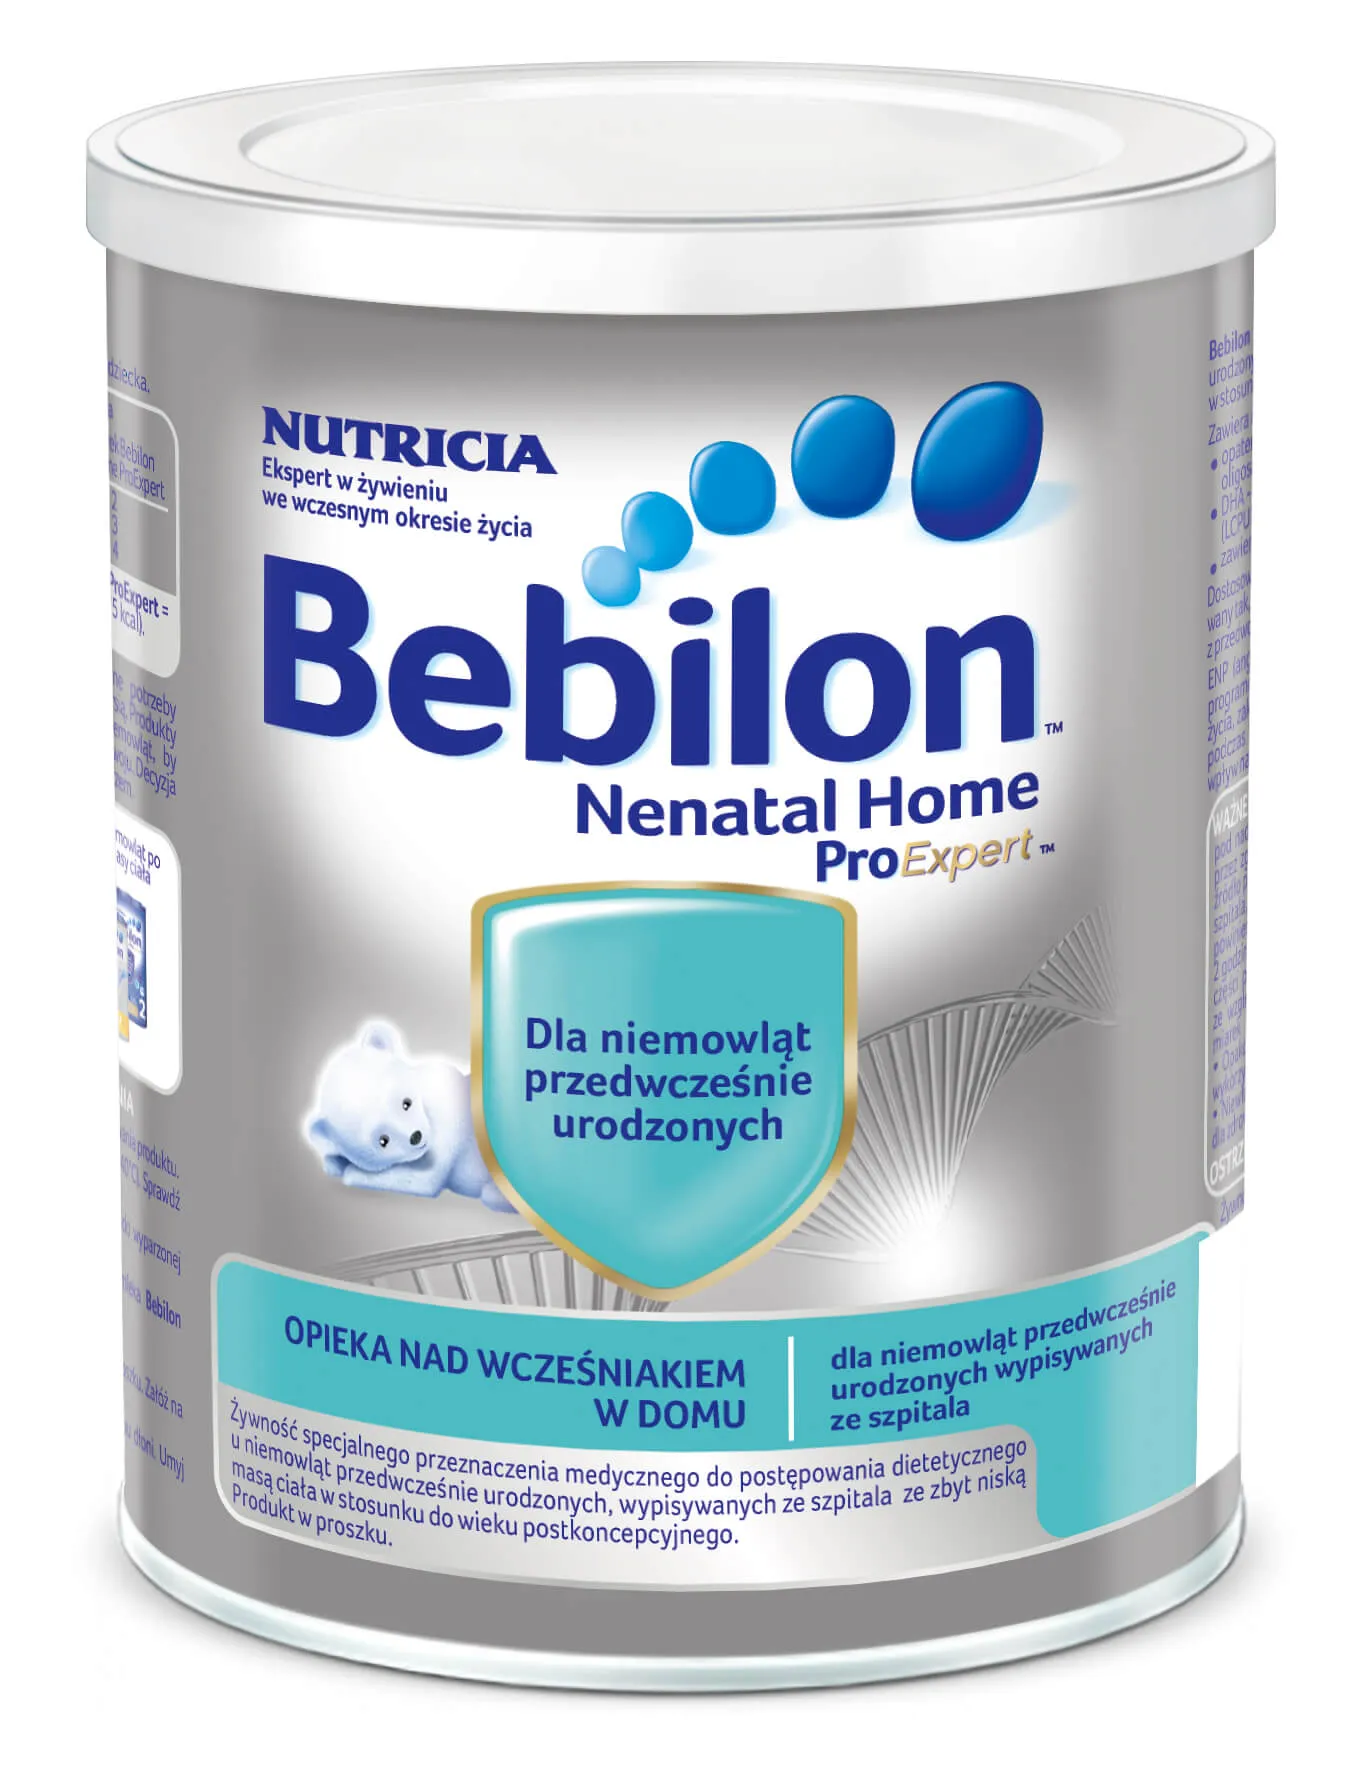 Bebilon Nenatal Home Proexpert, mleko dla niemowląt z niską masą urodzeniową, 400 g